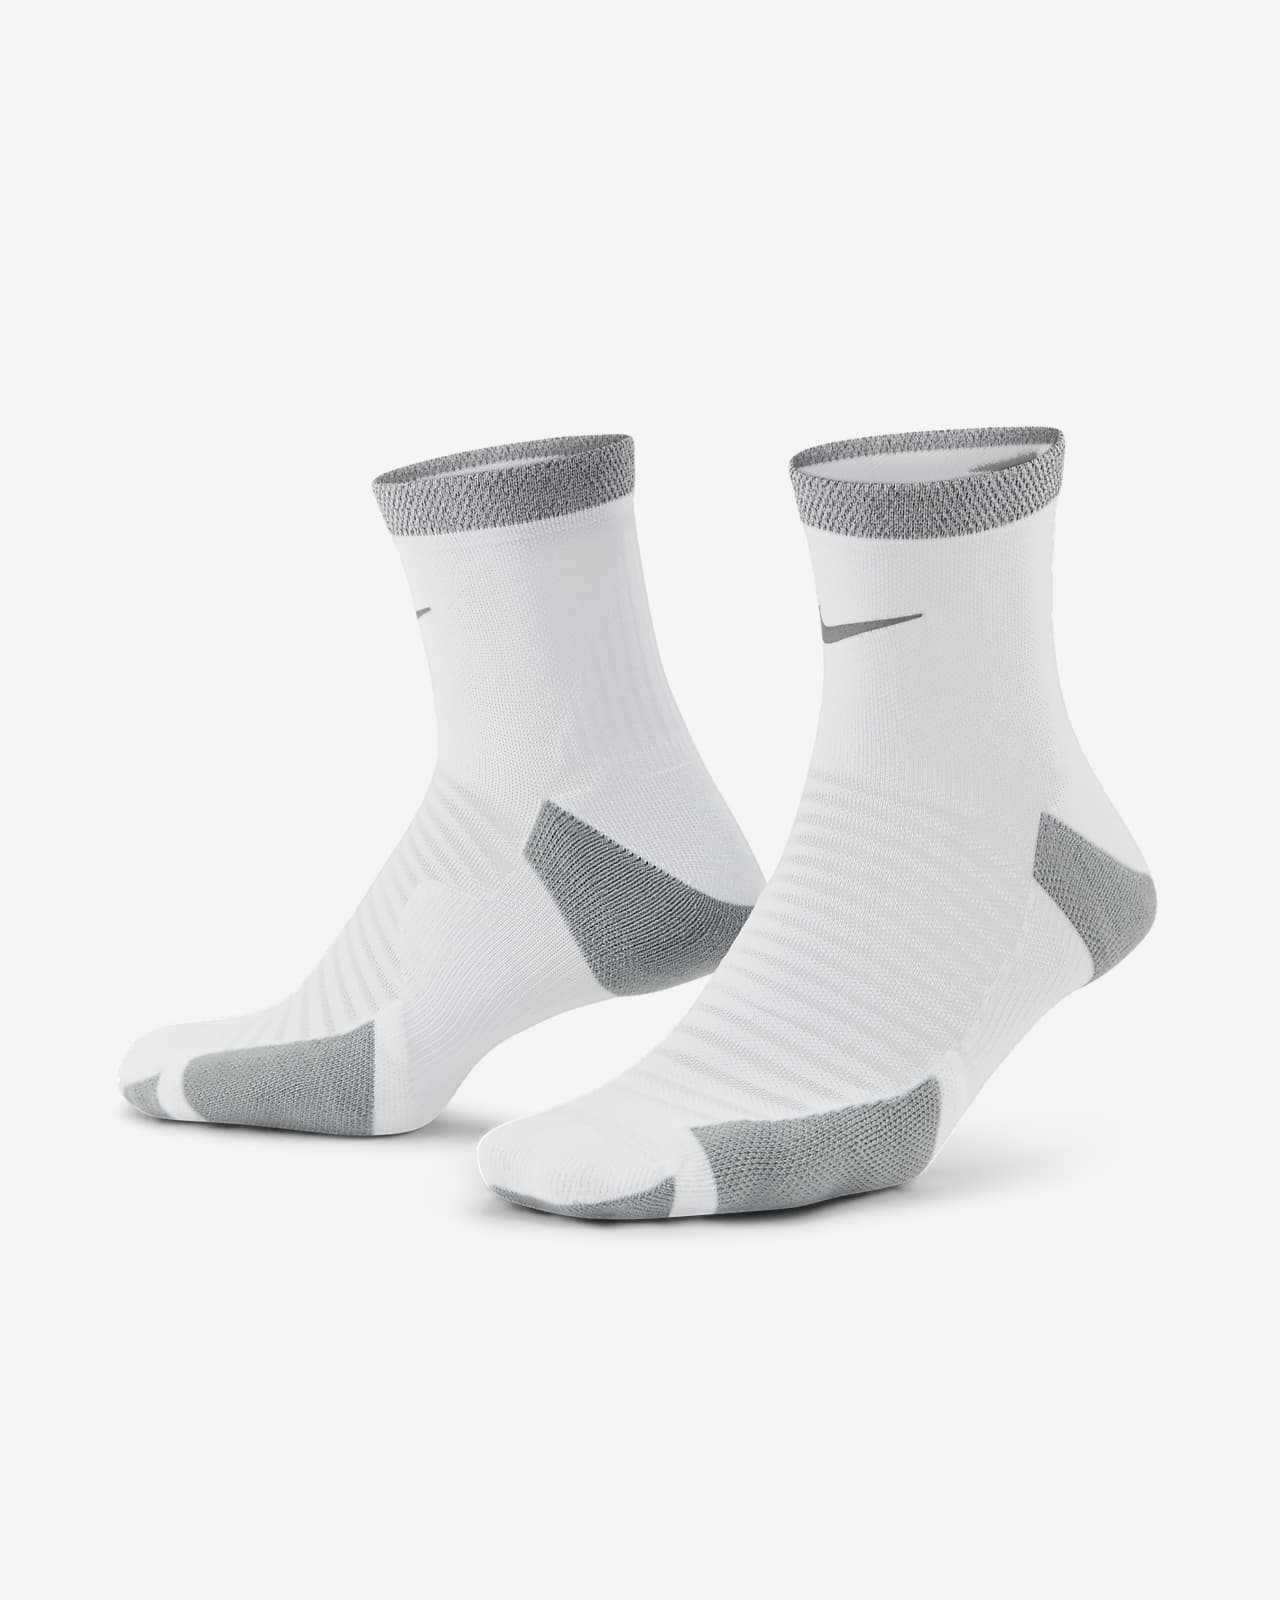 Socquettes de running rembourrées Nike Spark